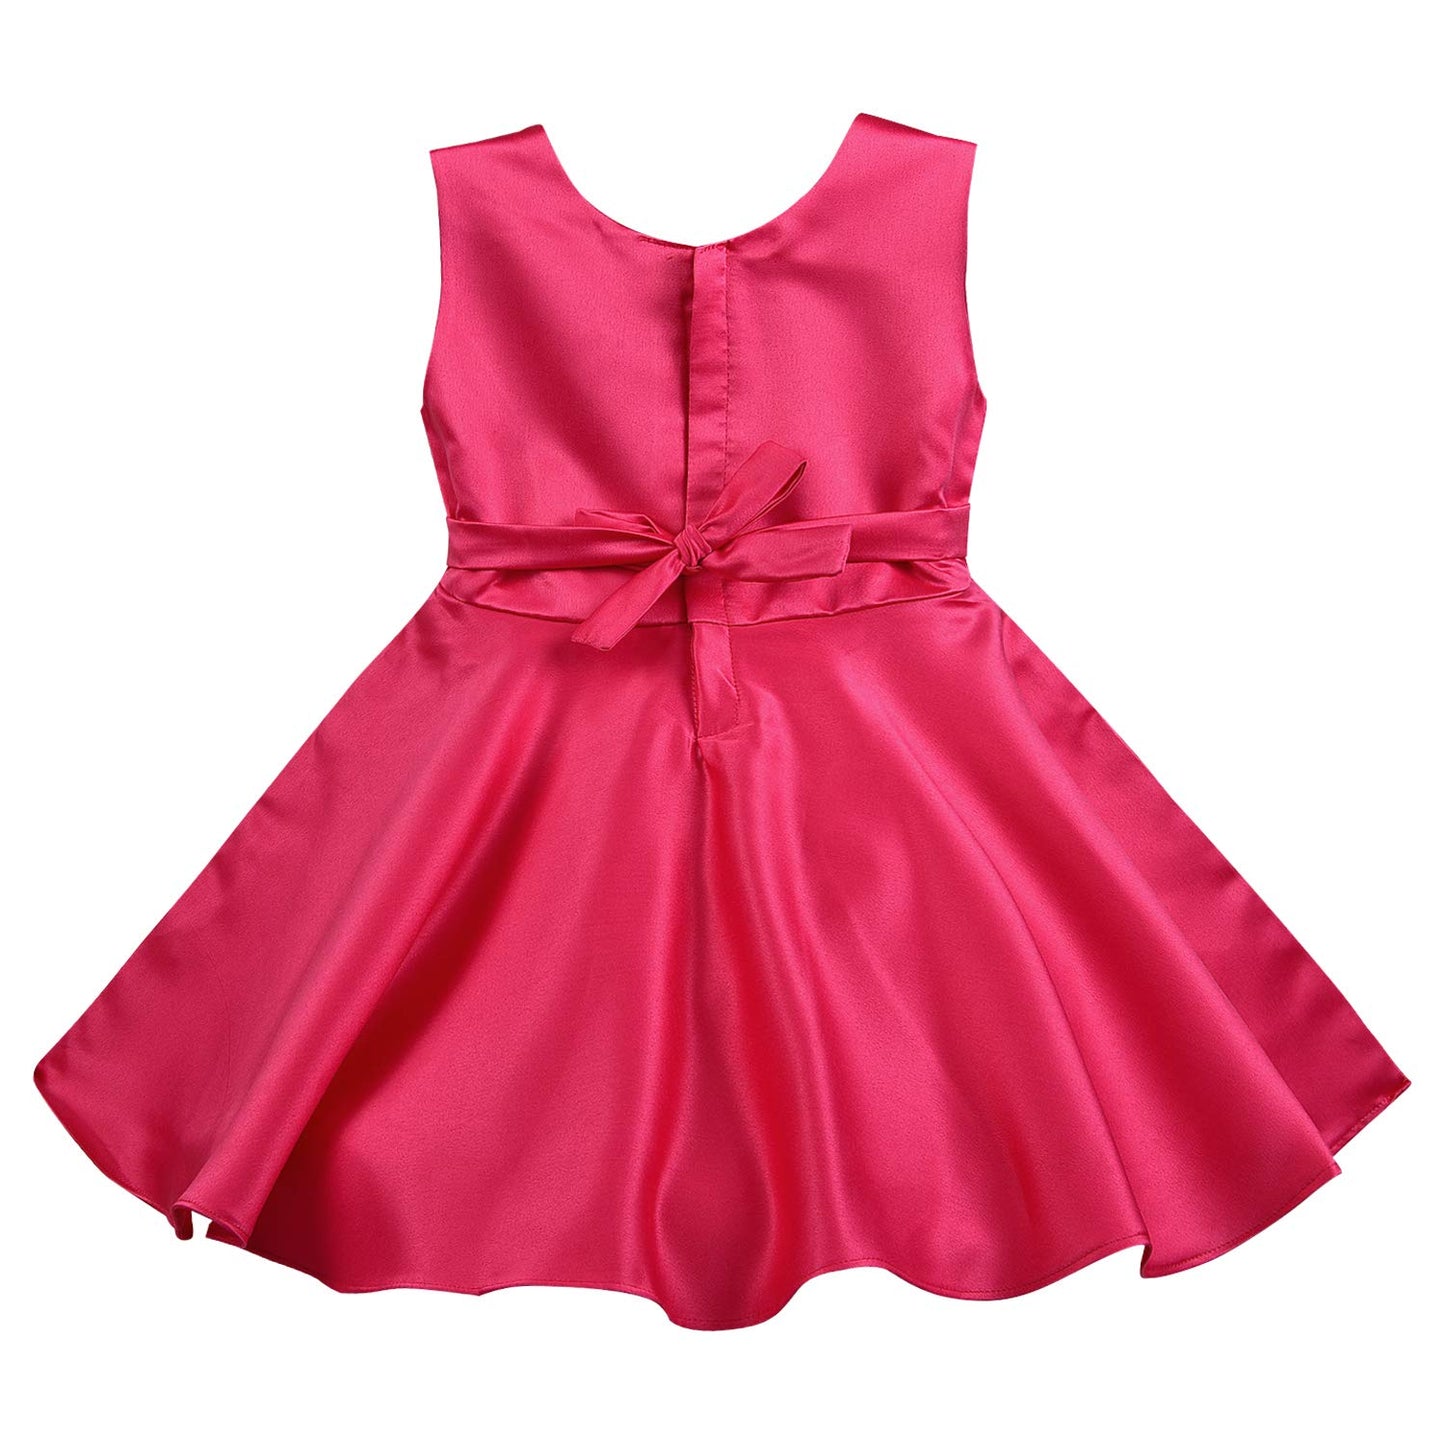 Wish Karo Baby Girls Frock Dress-(bxa245pnk)